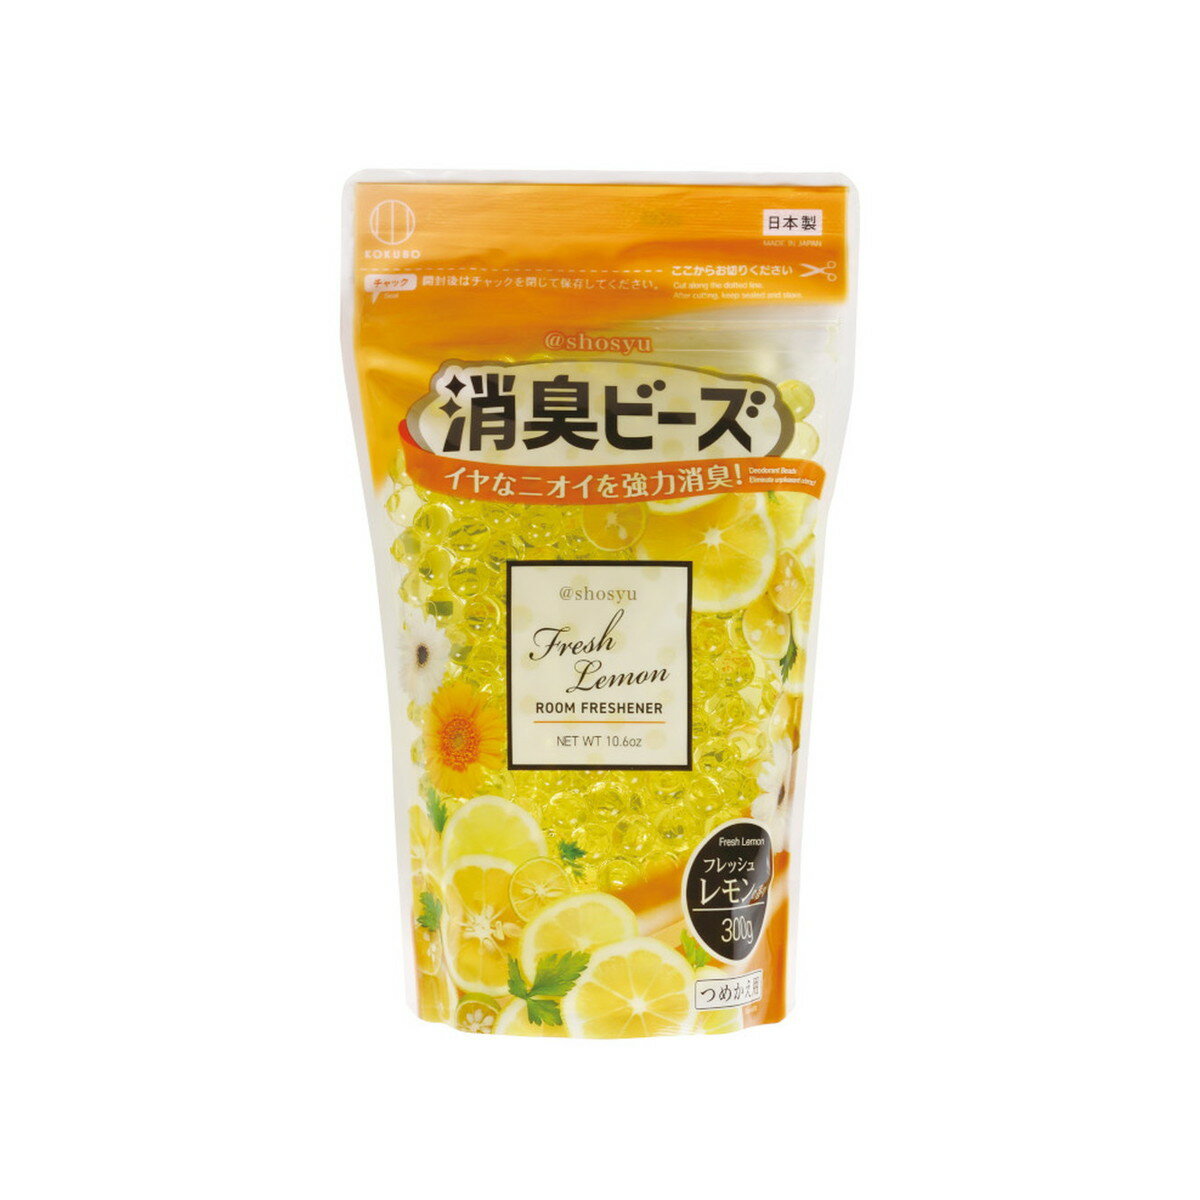 小久保工業所 @Shosyu アットショウシュウ 消臭ビーズ フレッシュレモン つめかえ用 300g